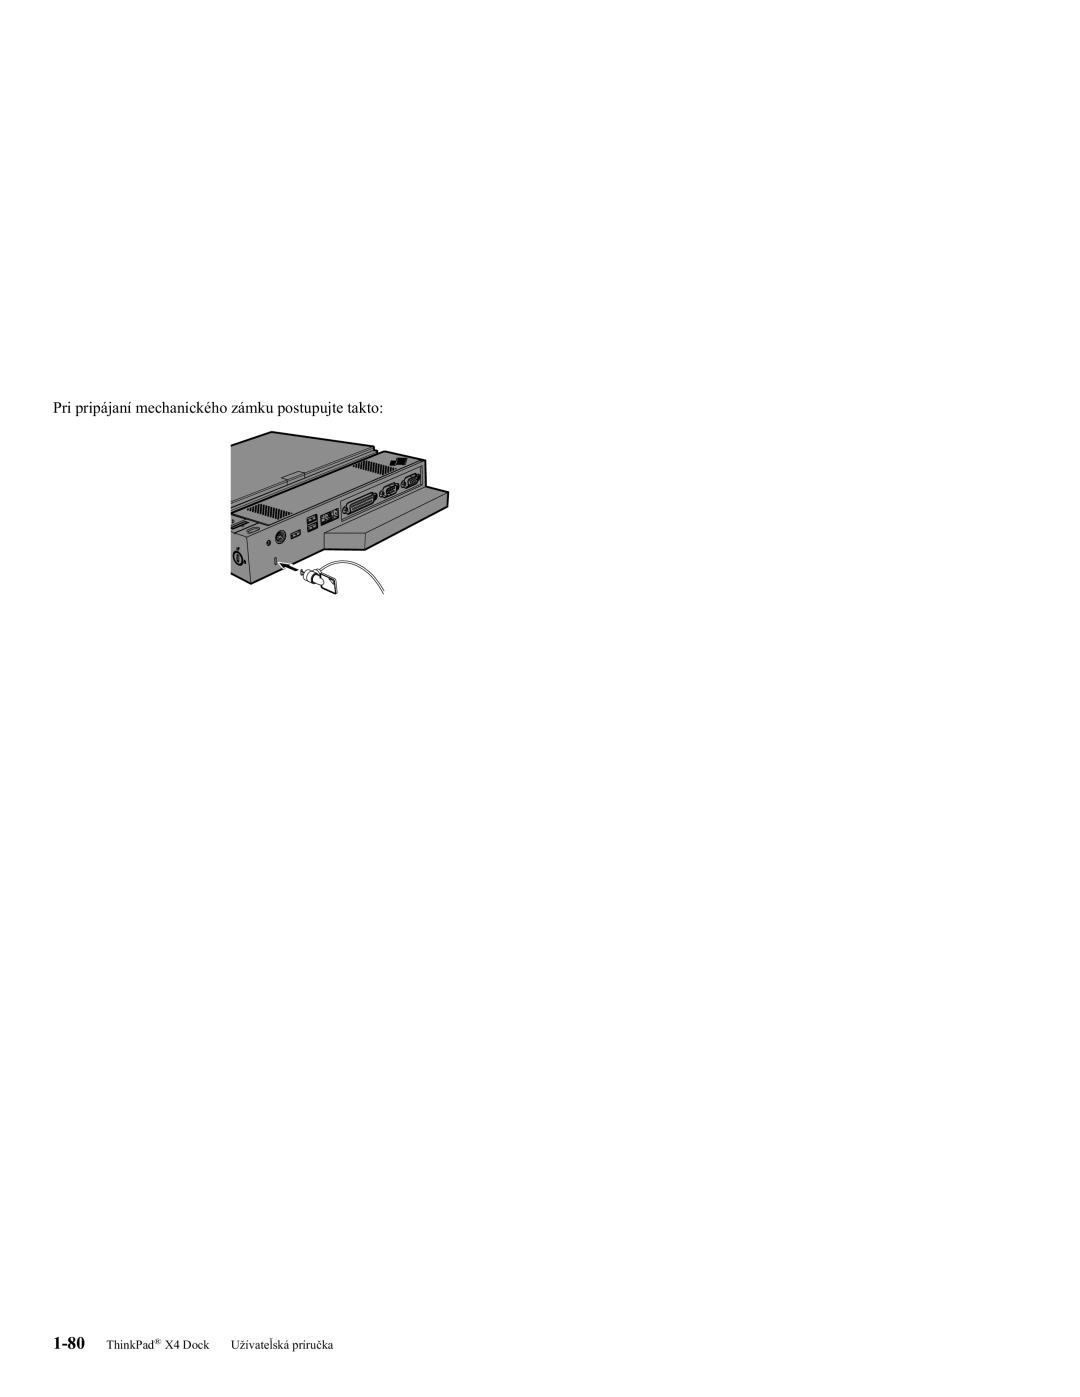 IBM manual Pri pripájaní mechanického zámku postupujte takto, ThinkPad X4 Dock Užívateľská príručka 